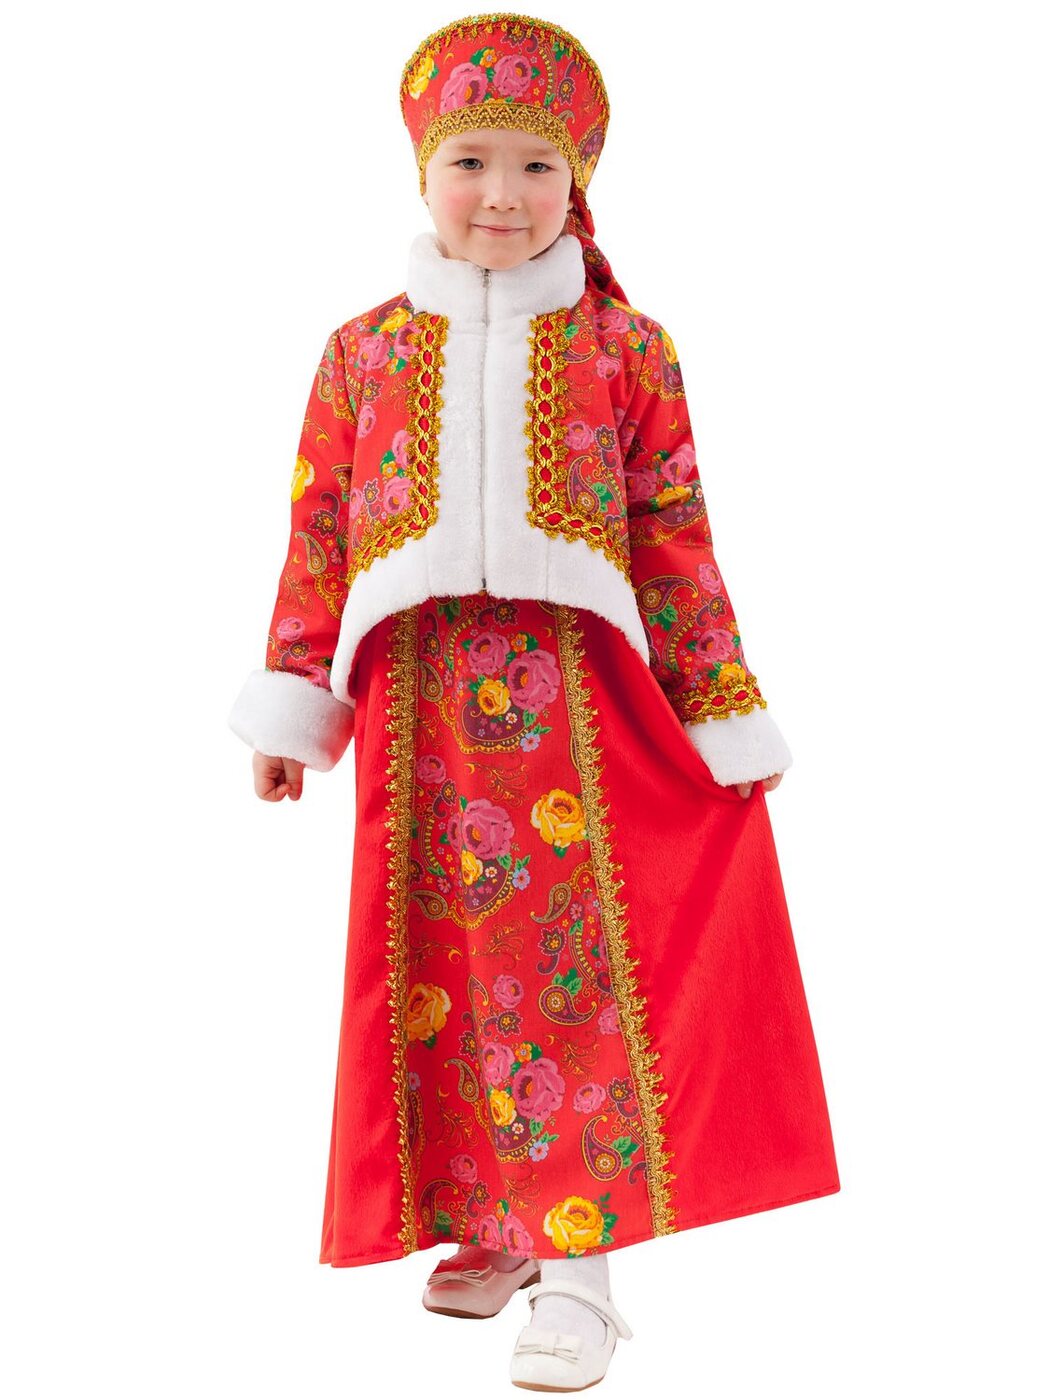 Одежда на масленицу для детей. Костюм Масленицы. Дети в национальных костюмах. Русские народные костюмы детские. Костюм на Масленицу для девочки.